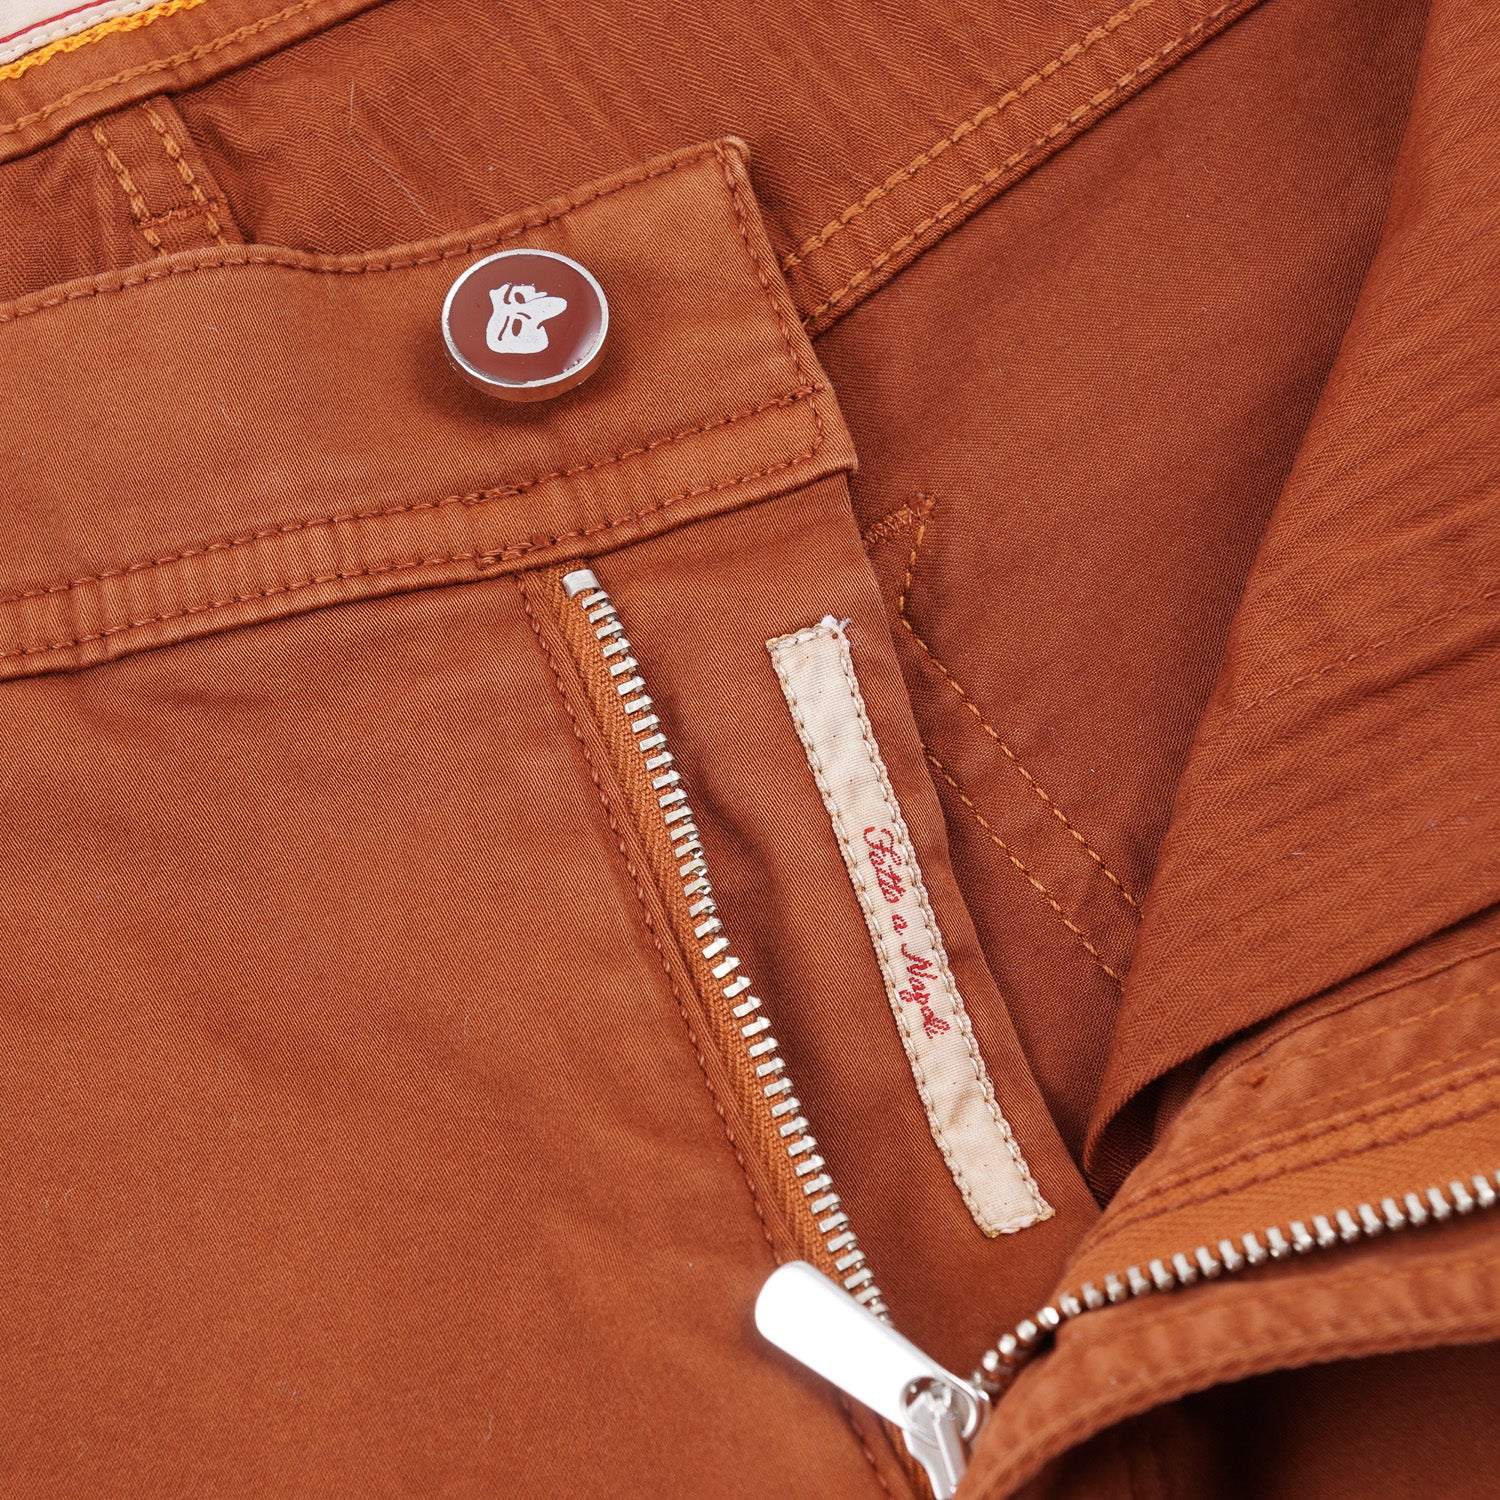 Marco Pescarolo Cotton 5-Pocket Pants - Top Shelf Apparel